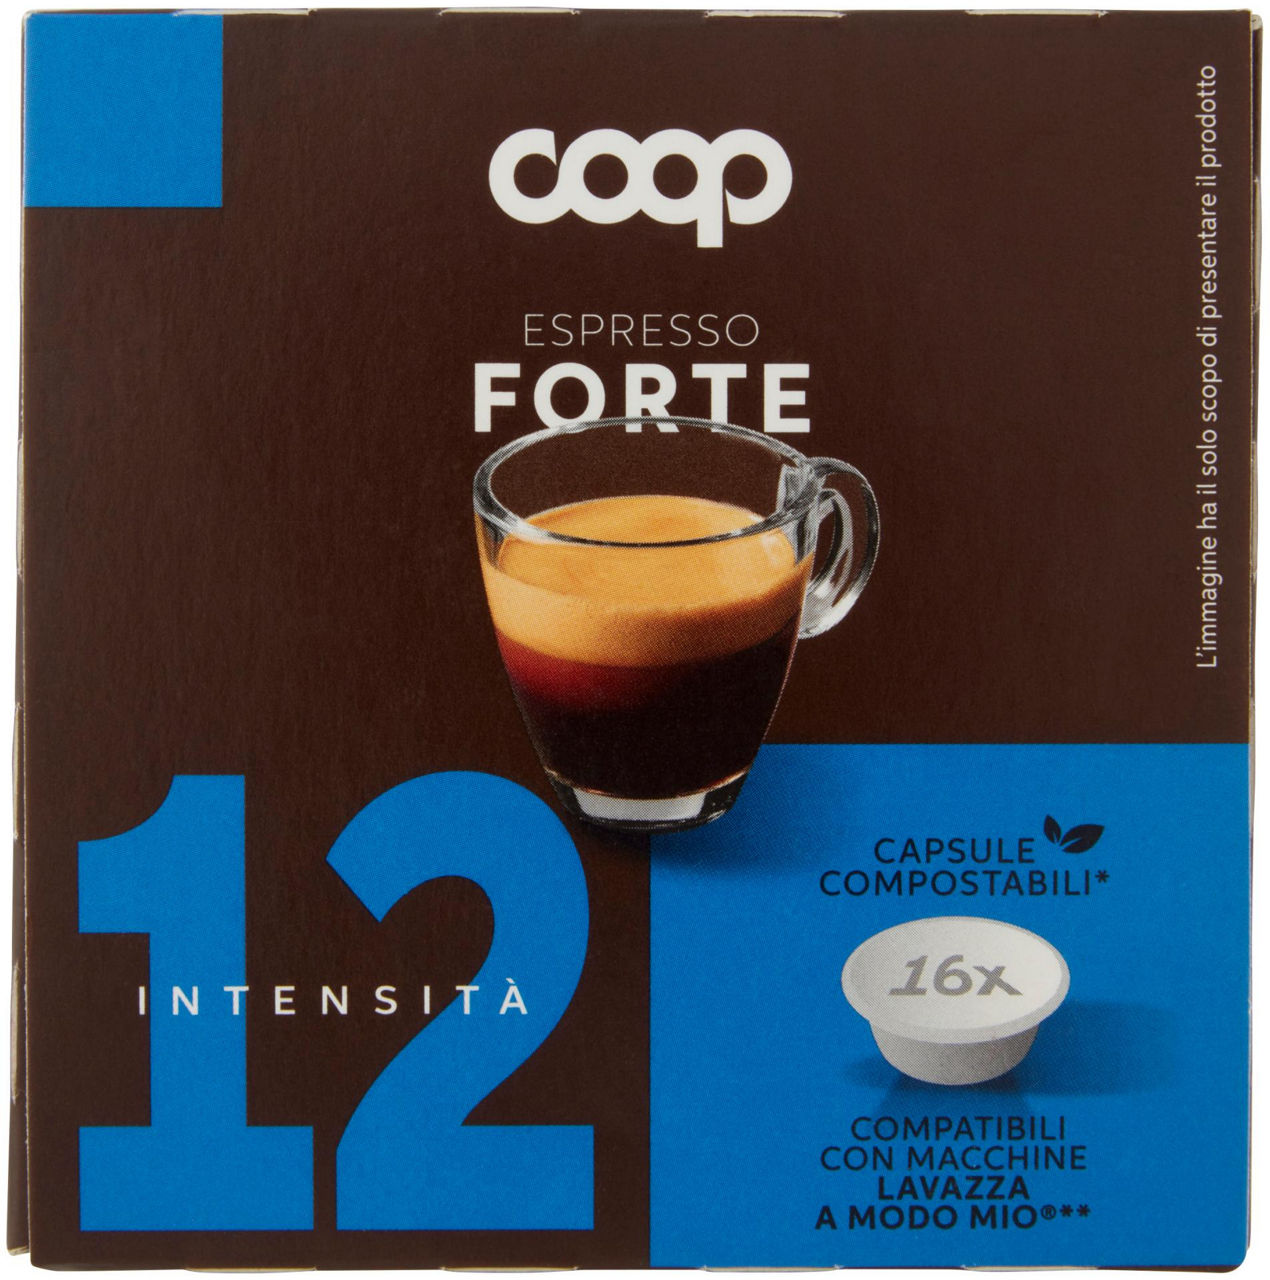 Caffe' capsule compatibili a modo mio coop miscela forte pz 16x7,5g g 120